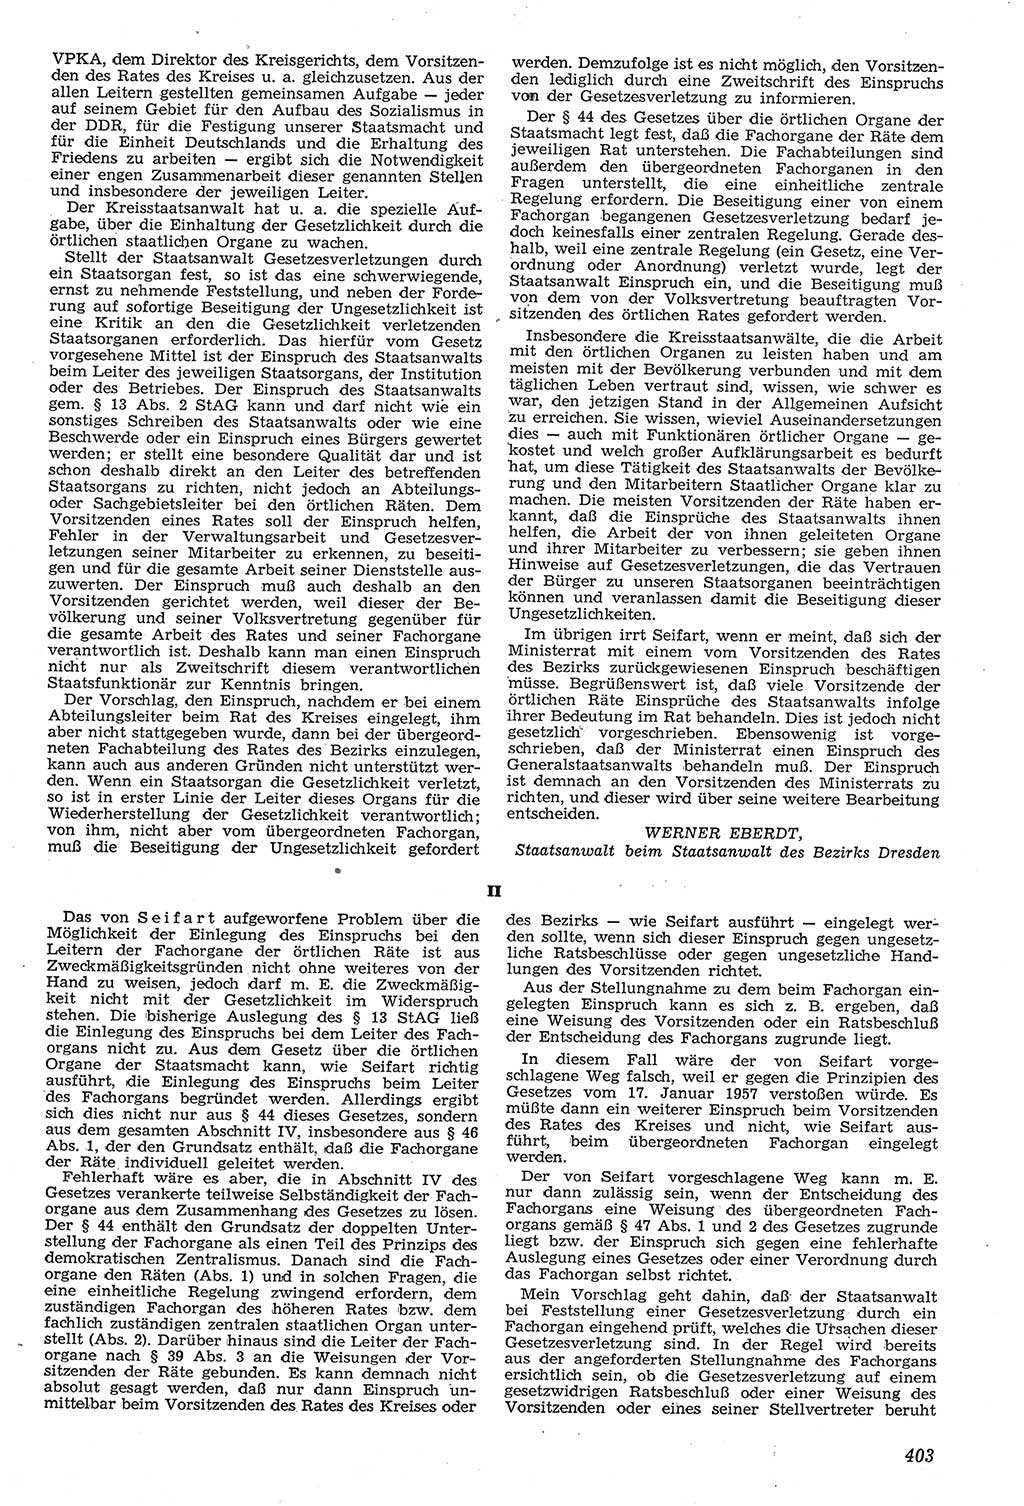 Neue Justiz (NJ), Zeitschrift für Recht und Rechtswissenschaft [Deutsche Demokratische Republik (DDR)], 11. Jahrgang 1957, Seite 403 (NJ DDR 1957, S. 403)